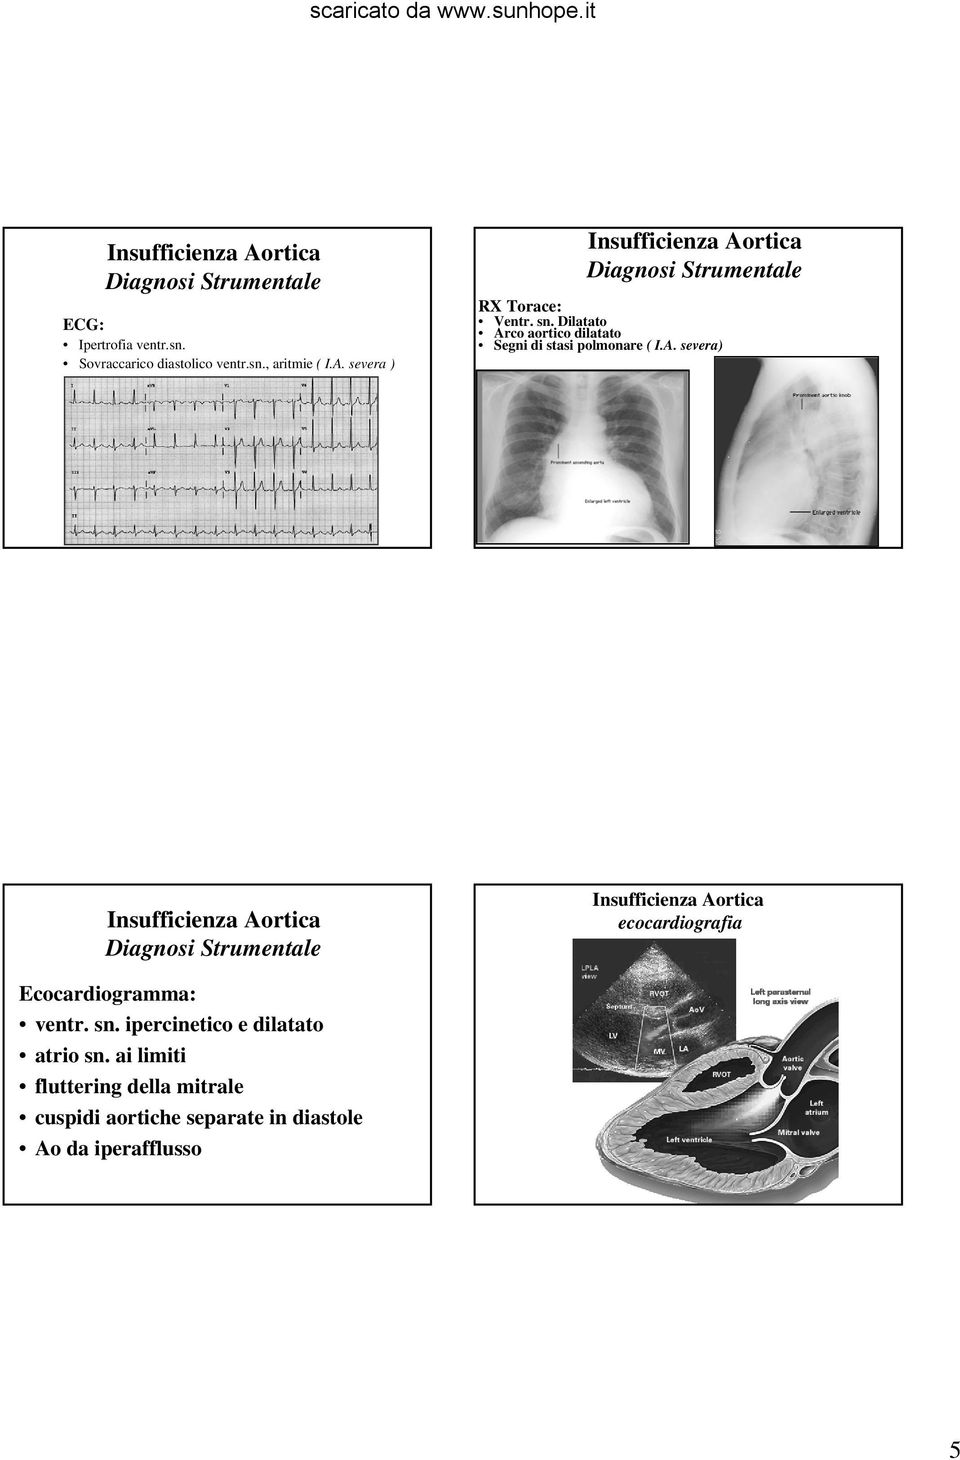 Dilatato Arco aortico dilatato Segni di stasi polmonare ( I.A. severa) Diagnosi Strumentale ecocardiografia Ecocardiogramma: ventr.